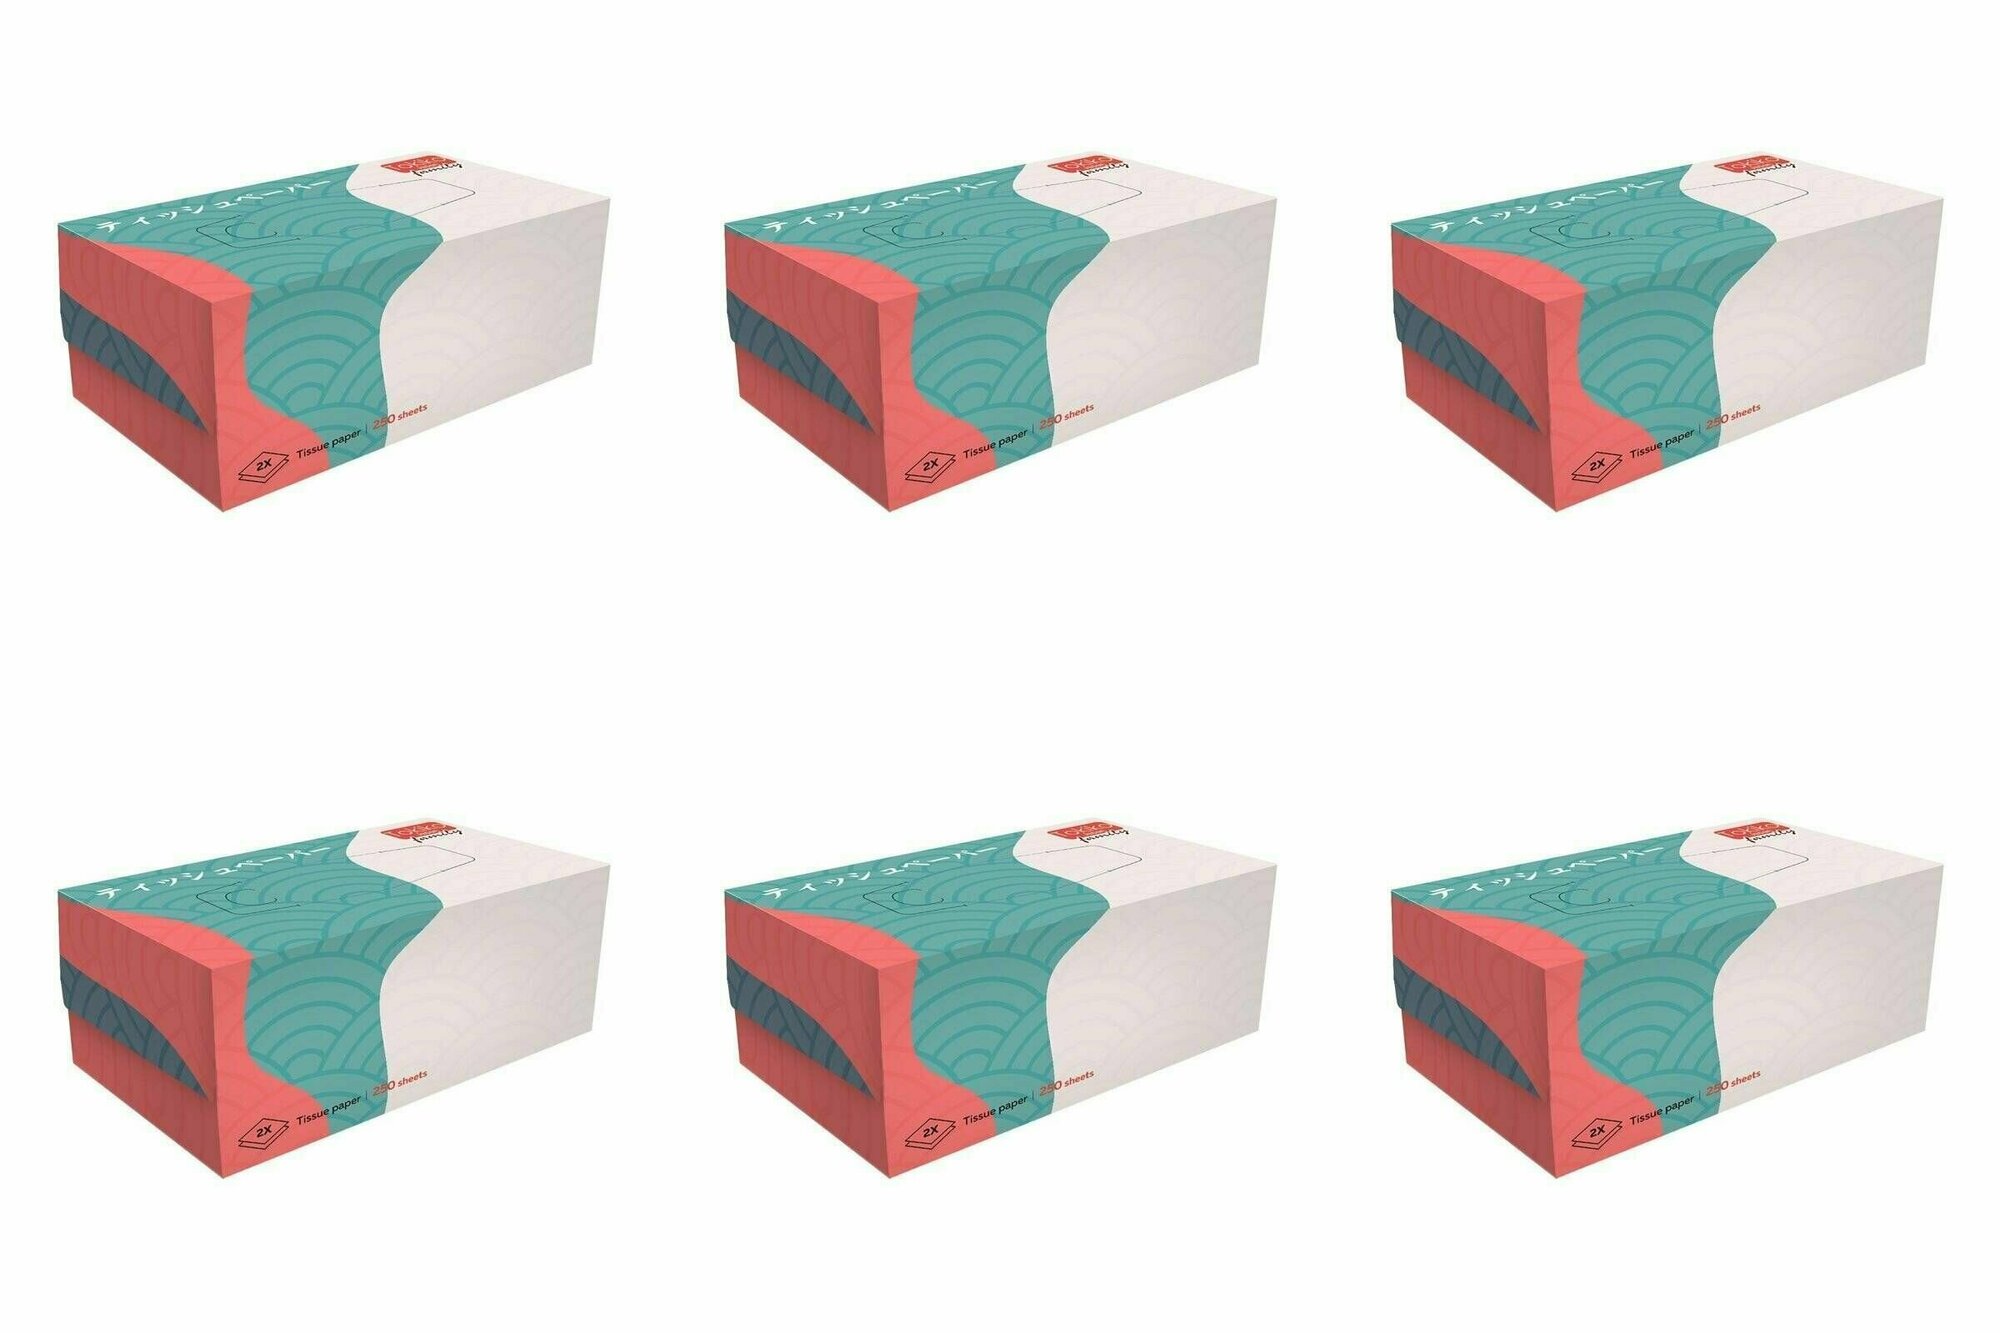 Tokiko Бумажные салфетки Japan Family 2-слойные, 250 шт в уп, 6 уп